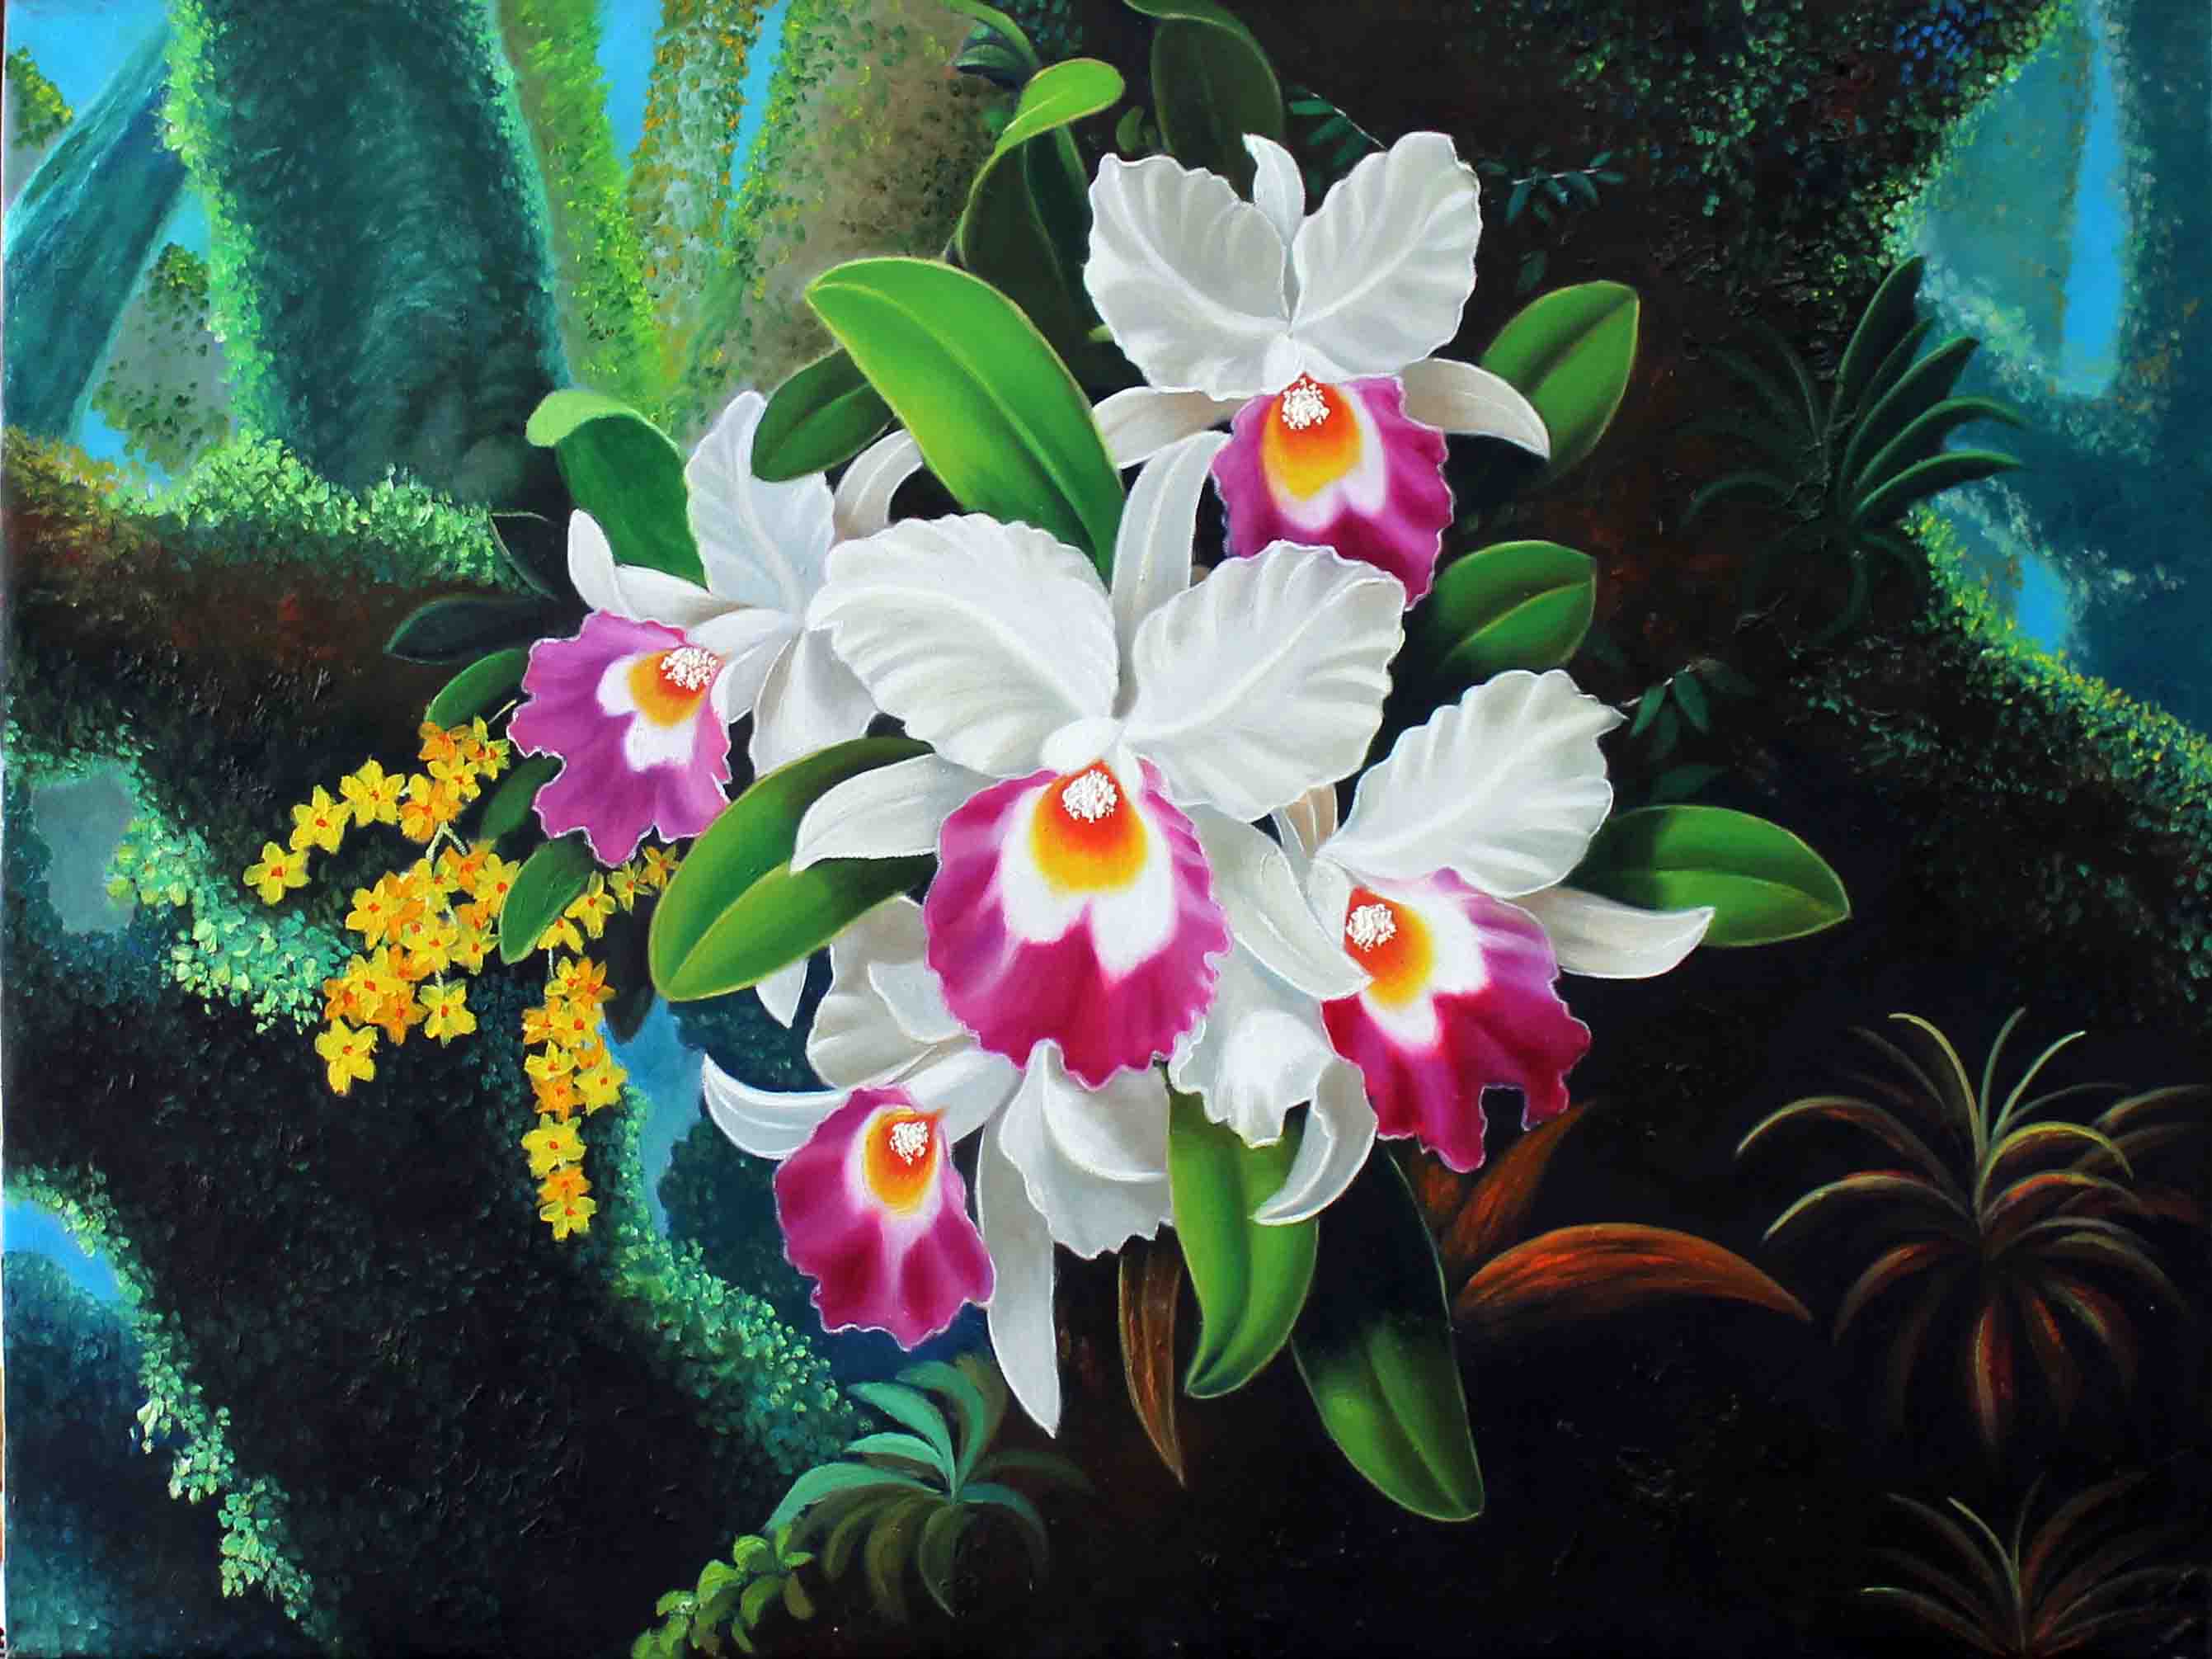 Tranh sơn dầu hoa lan sẽ đưa bạn vào thế giới của sự đam mê và tuyệt vời. Với sự phối hợp màu sắc khéo léo và những nét vẽ uyển chuyển, tranh sơn dầu hoa lan sẽ làm nổi bật vẻ đẹp của loài hoa quý tộc này.